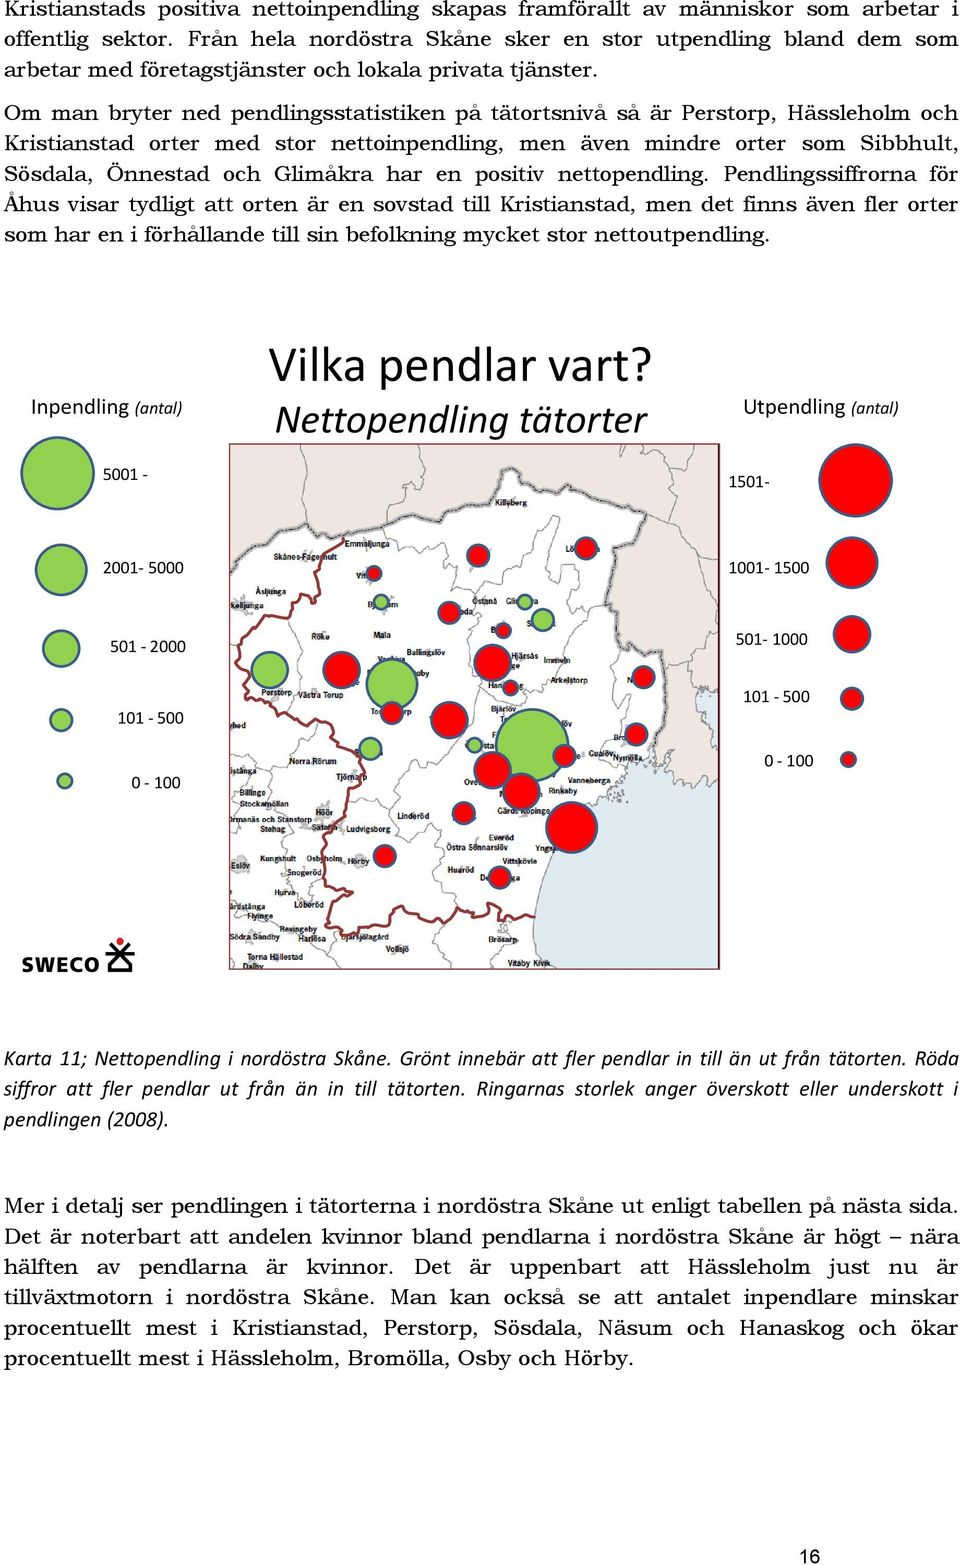 Om man bryter ned pendlingsstatistiken på tätortsnivå så är Perstorp, Hässleholm och Kristianstad orter med stor nettoinpendling, men även mindre orter som Sibbhult, Sösdala, Önnestad och Glimåkra